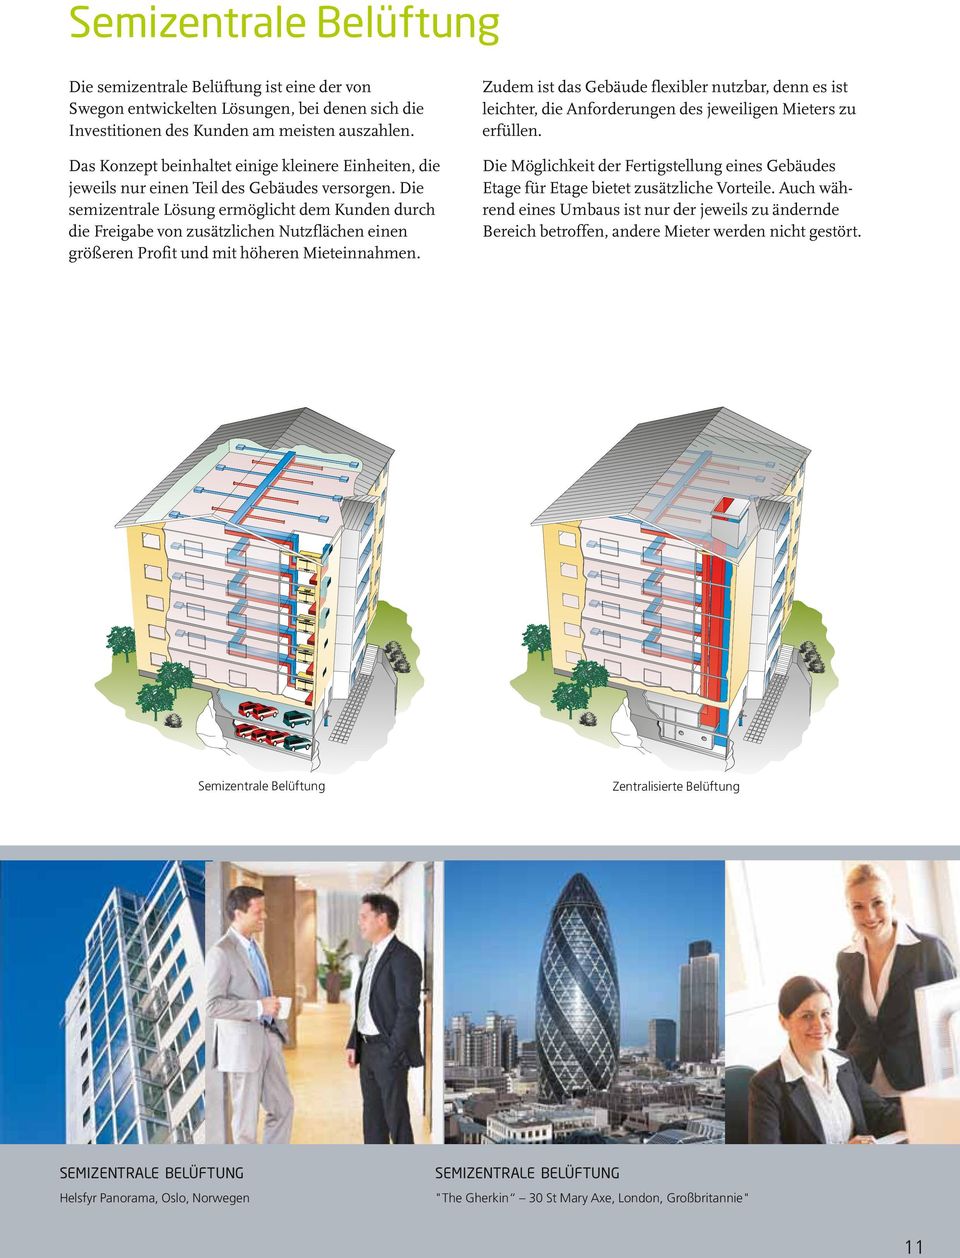 Das Konzept beinhaltet einige kleinere Einheiten, die jeweils nur einen Teil des Gebäudes versorgen.